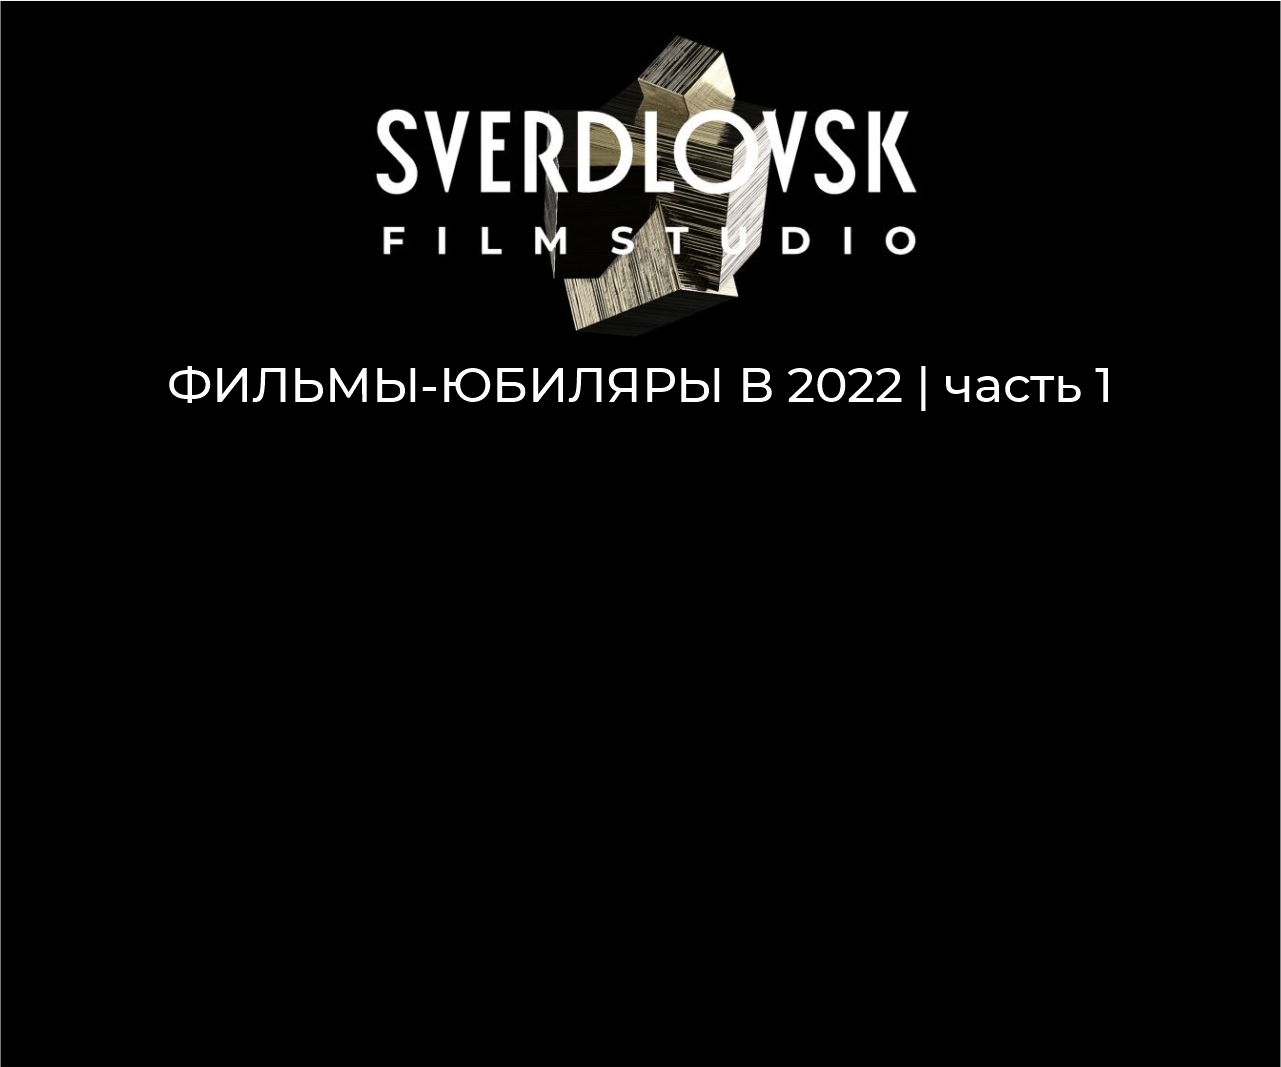 Фильмы Свердловской киностудии, которые отмечают юбилей в 2022 году. Часть 1